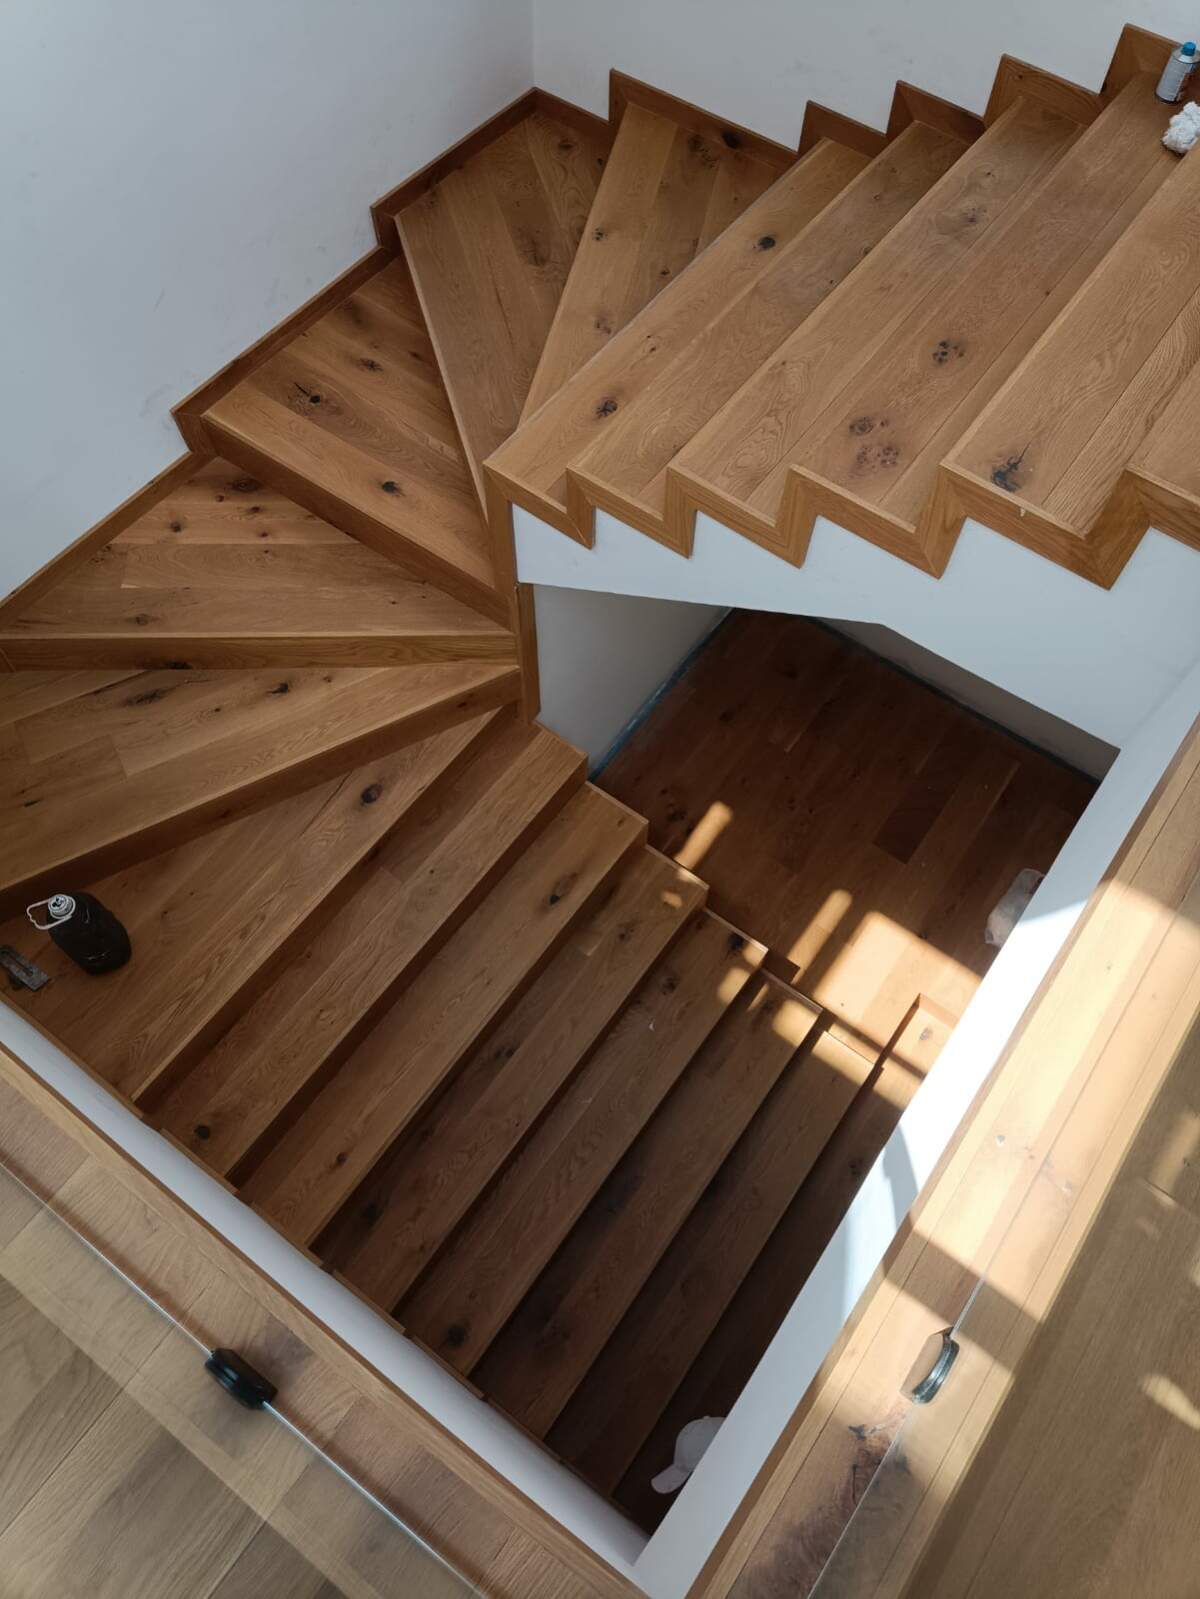 Por qué elegir escaleras de madera?